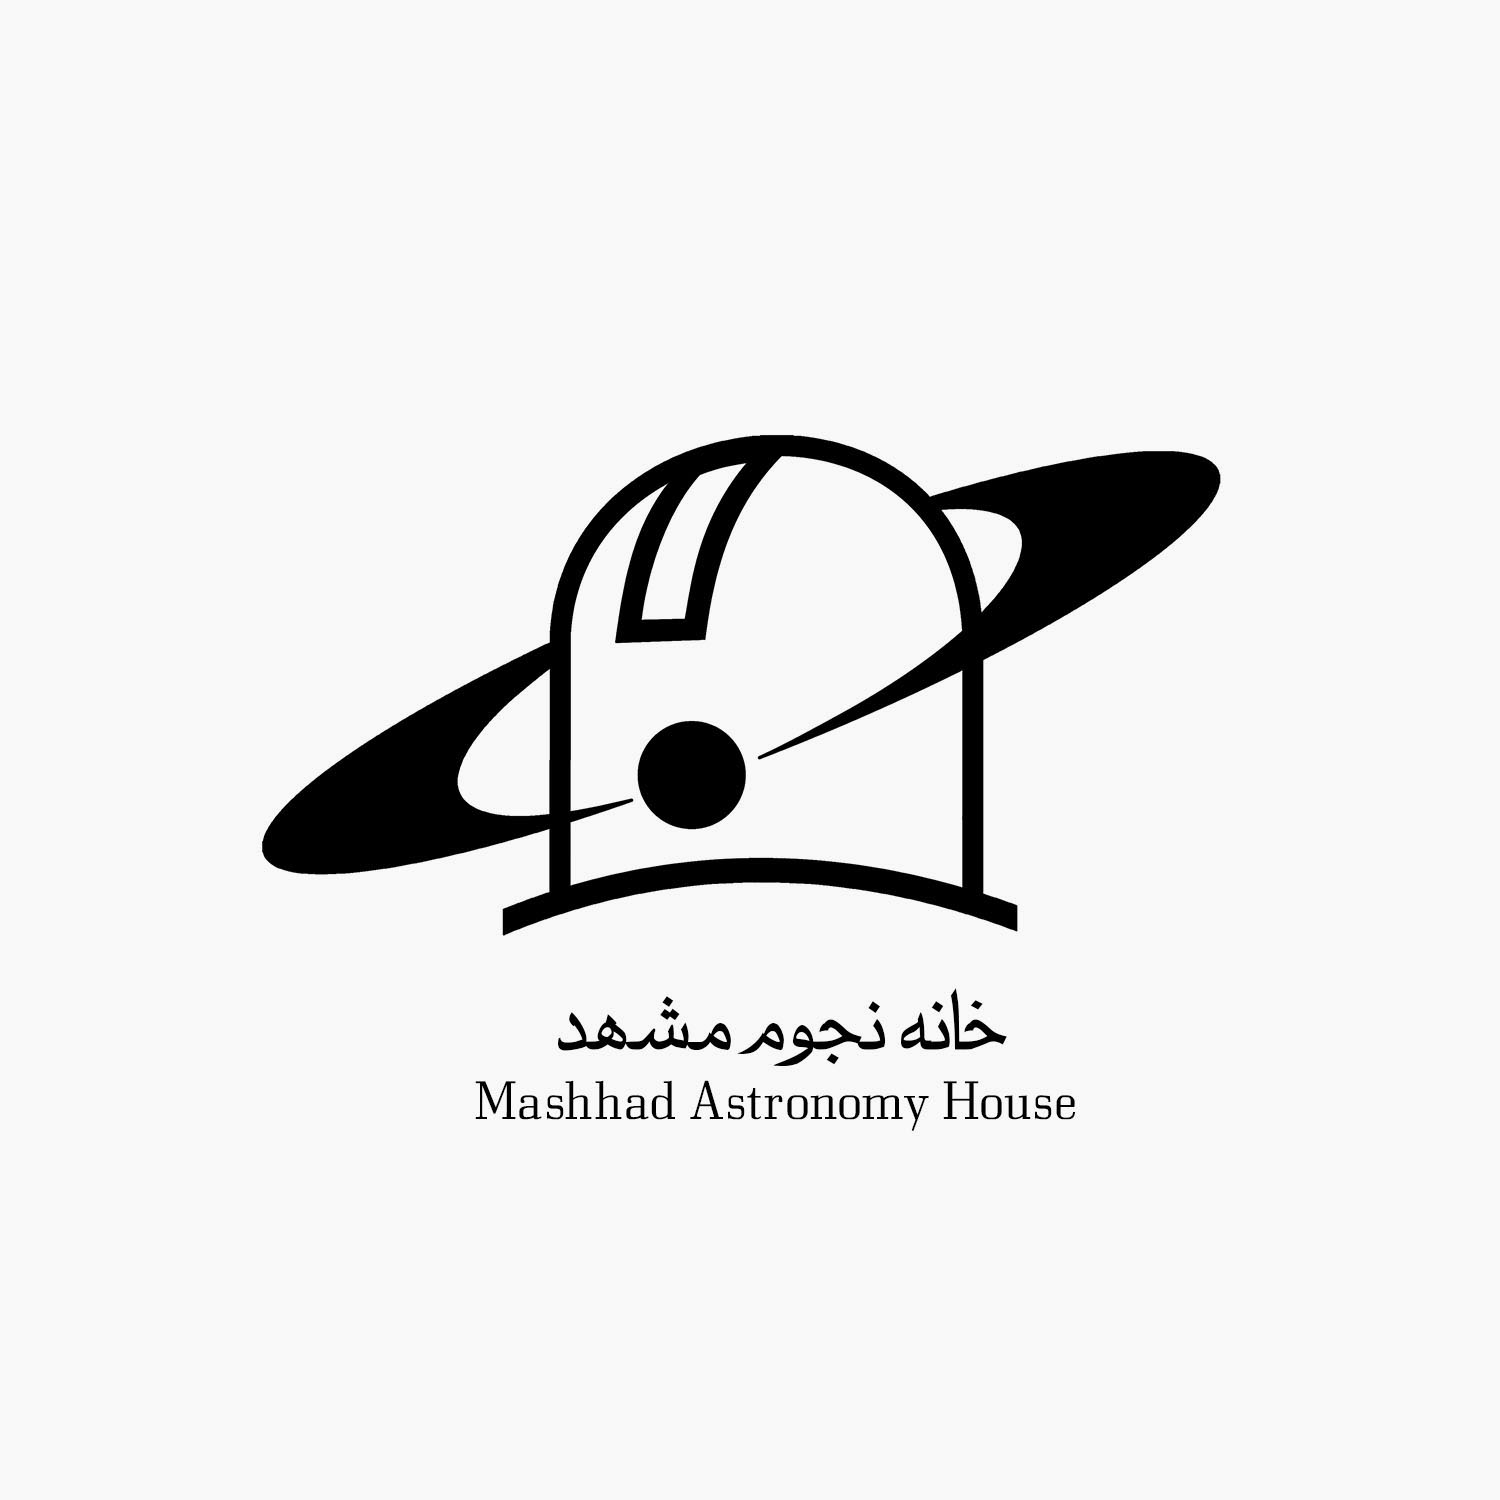 خانه نجوم مشهد- نسخه سیاه و سفید